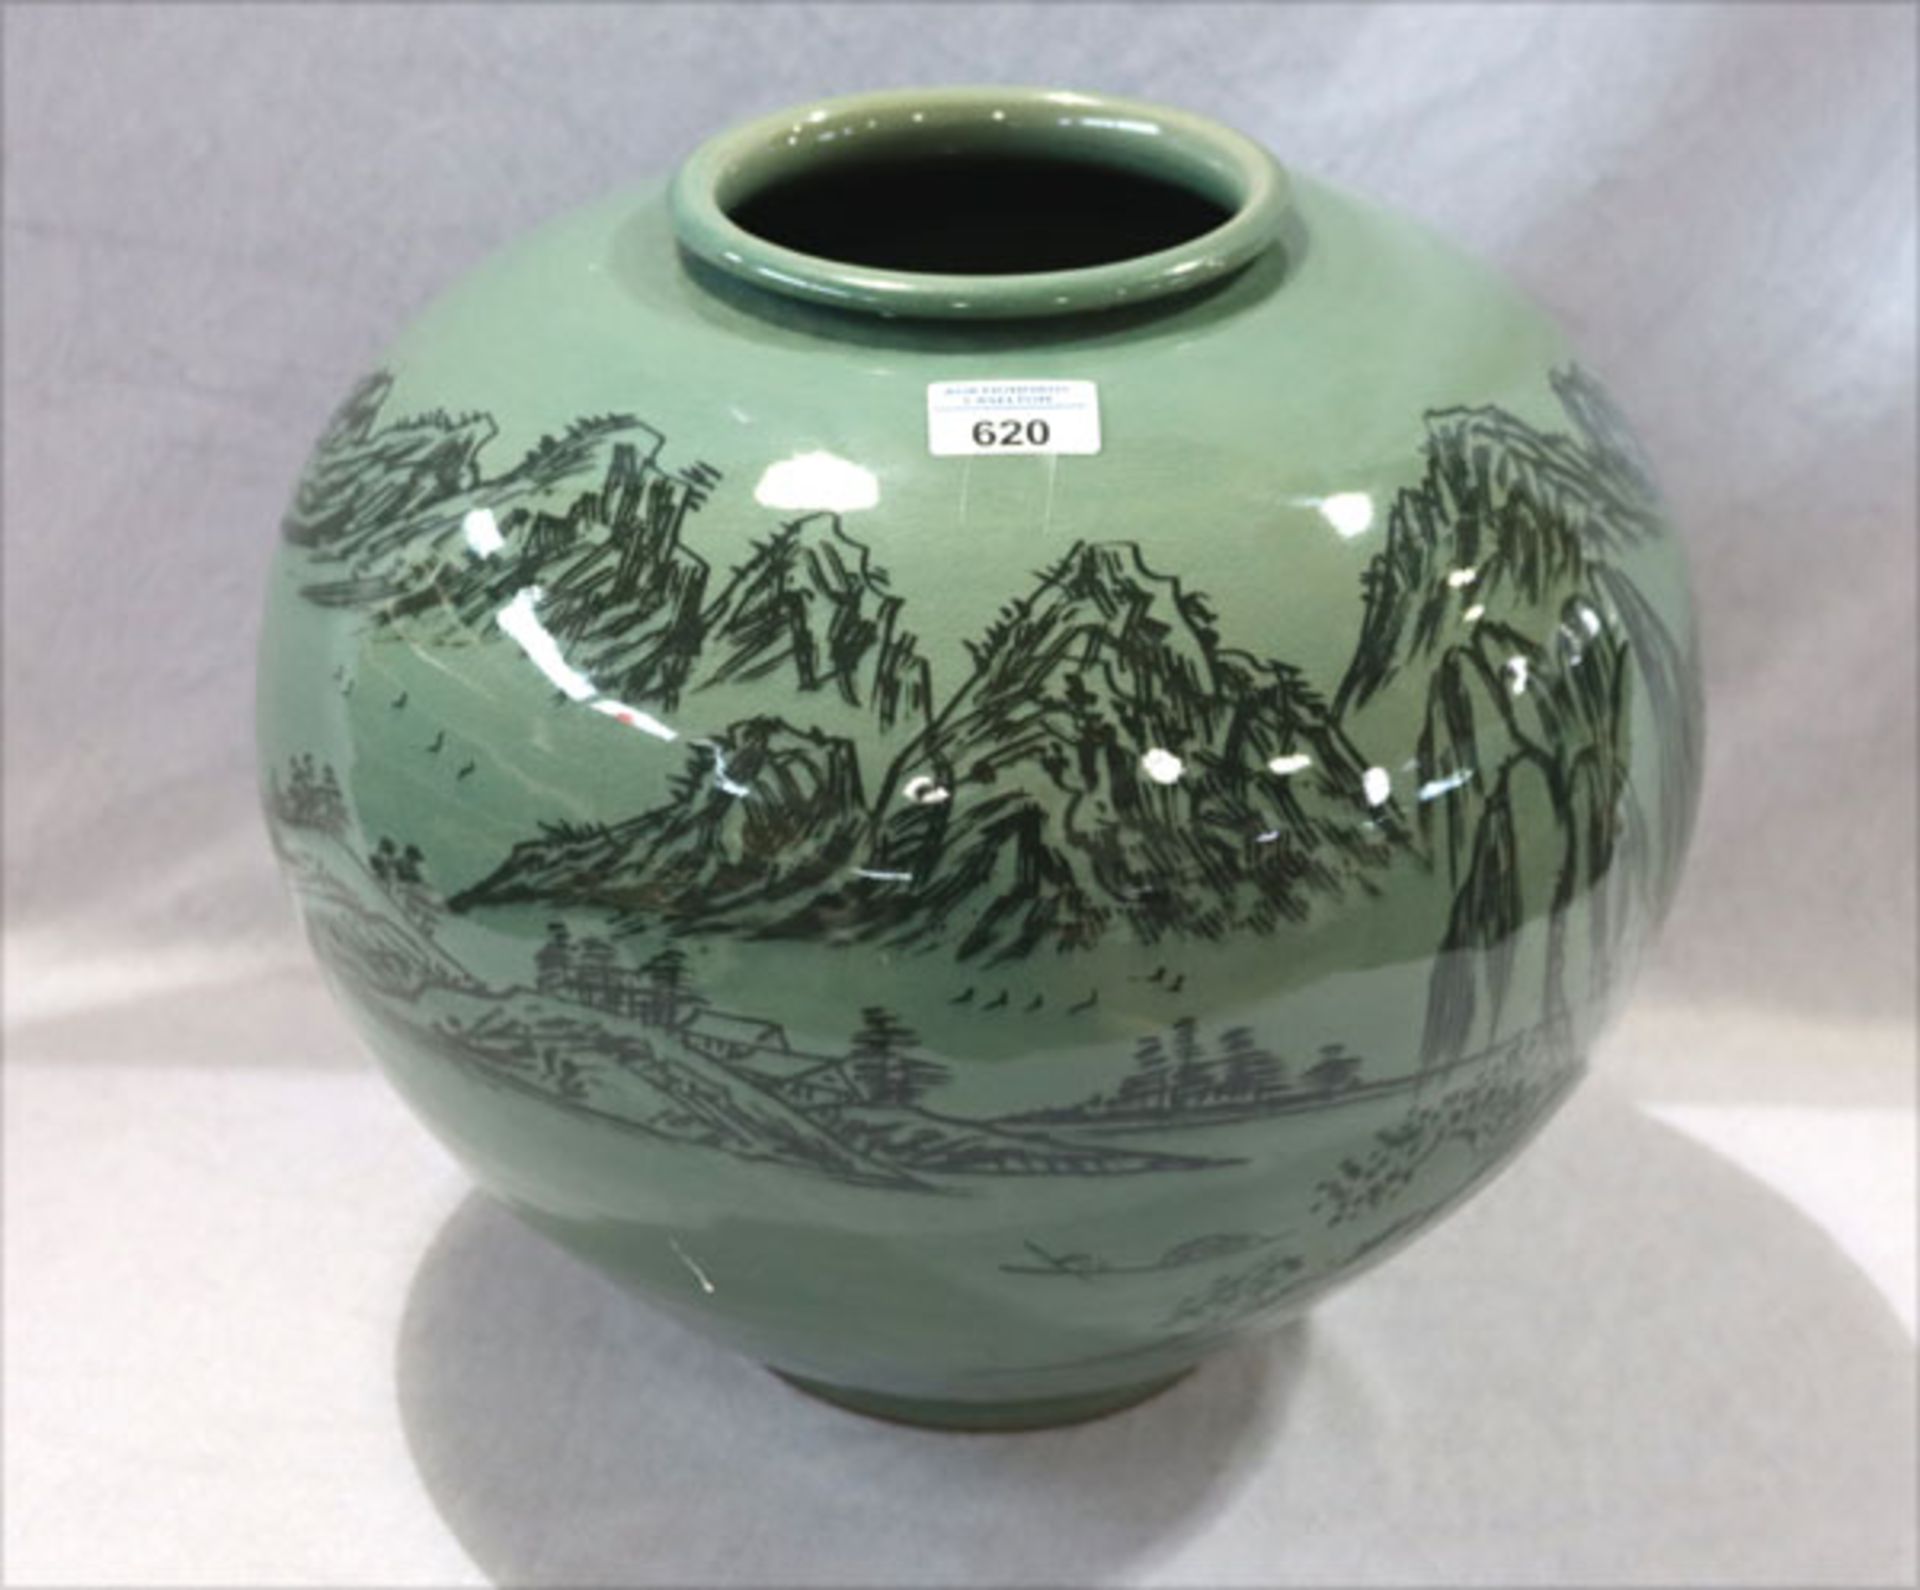 Koreanische Seladon Keramik Vase in bauchiger Form, grün mit dunkelgrüner Landschaftsmalerei, am